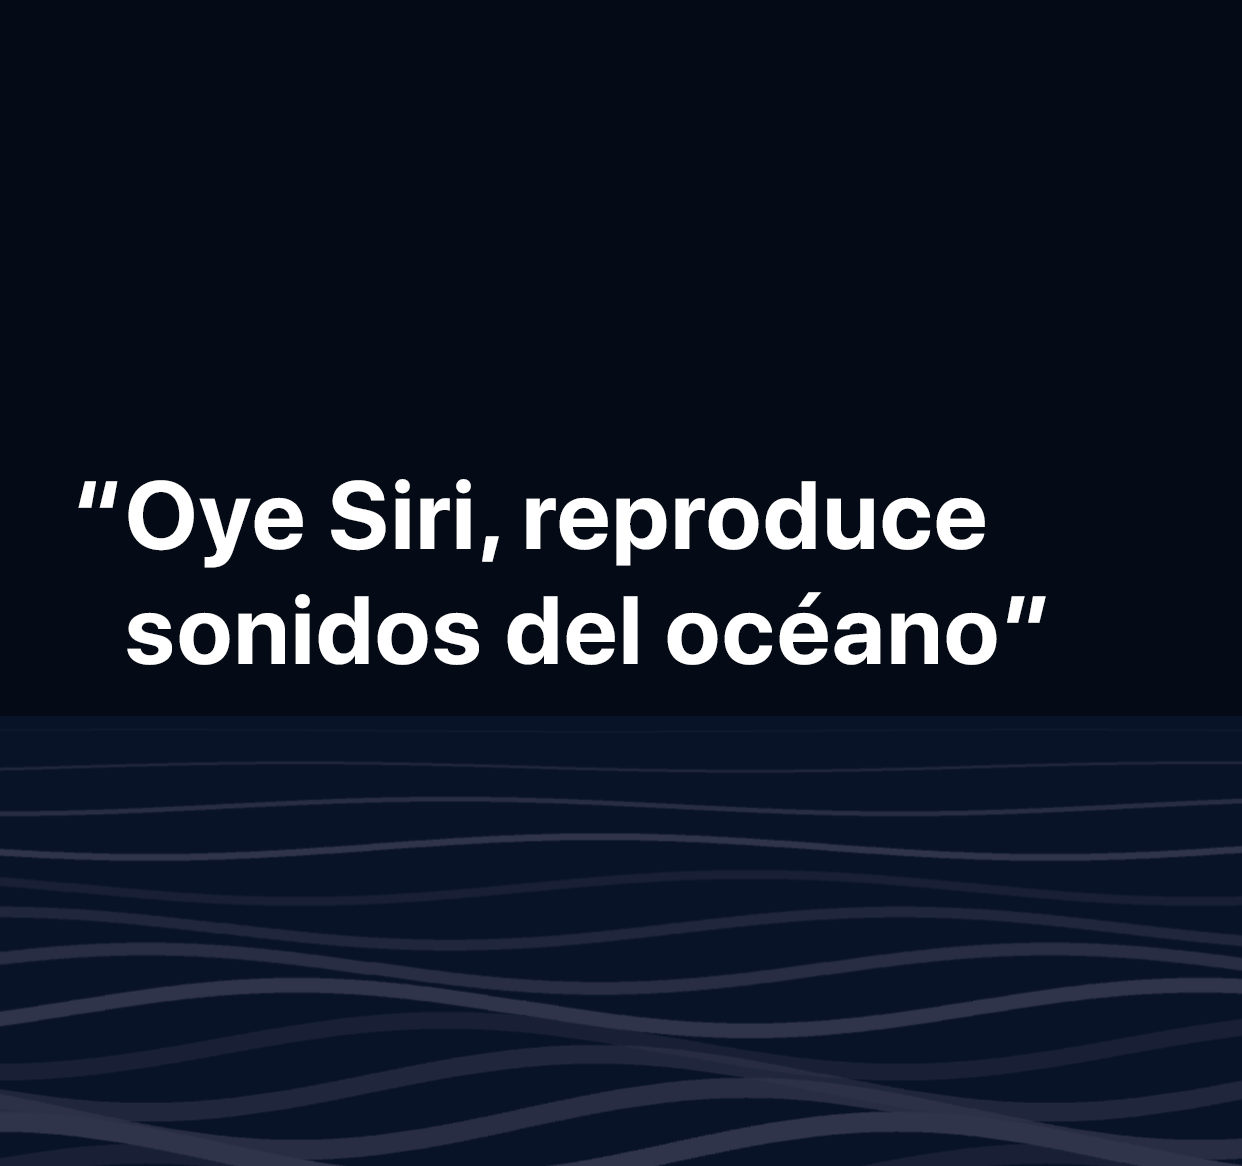 Una ilustración de las palabras “Oye Siri, reproduce sonidos del océano”.